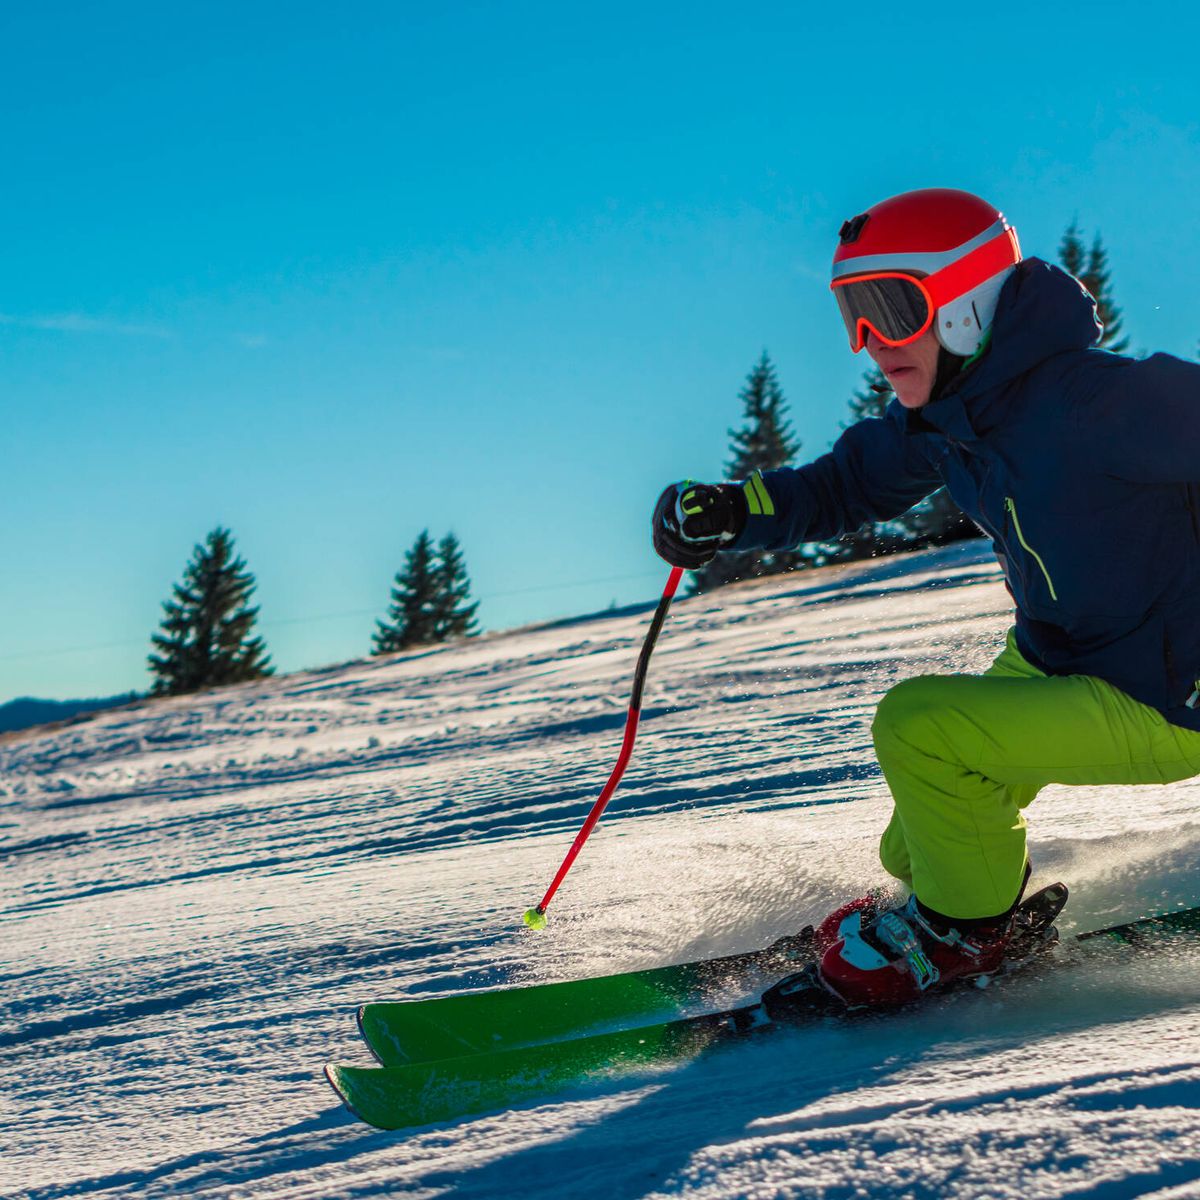 El casco es parte imprescindible de tu equipo de esquí - Blog